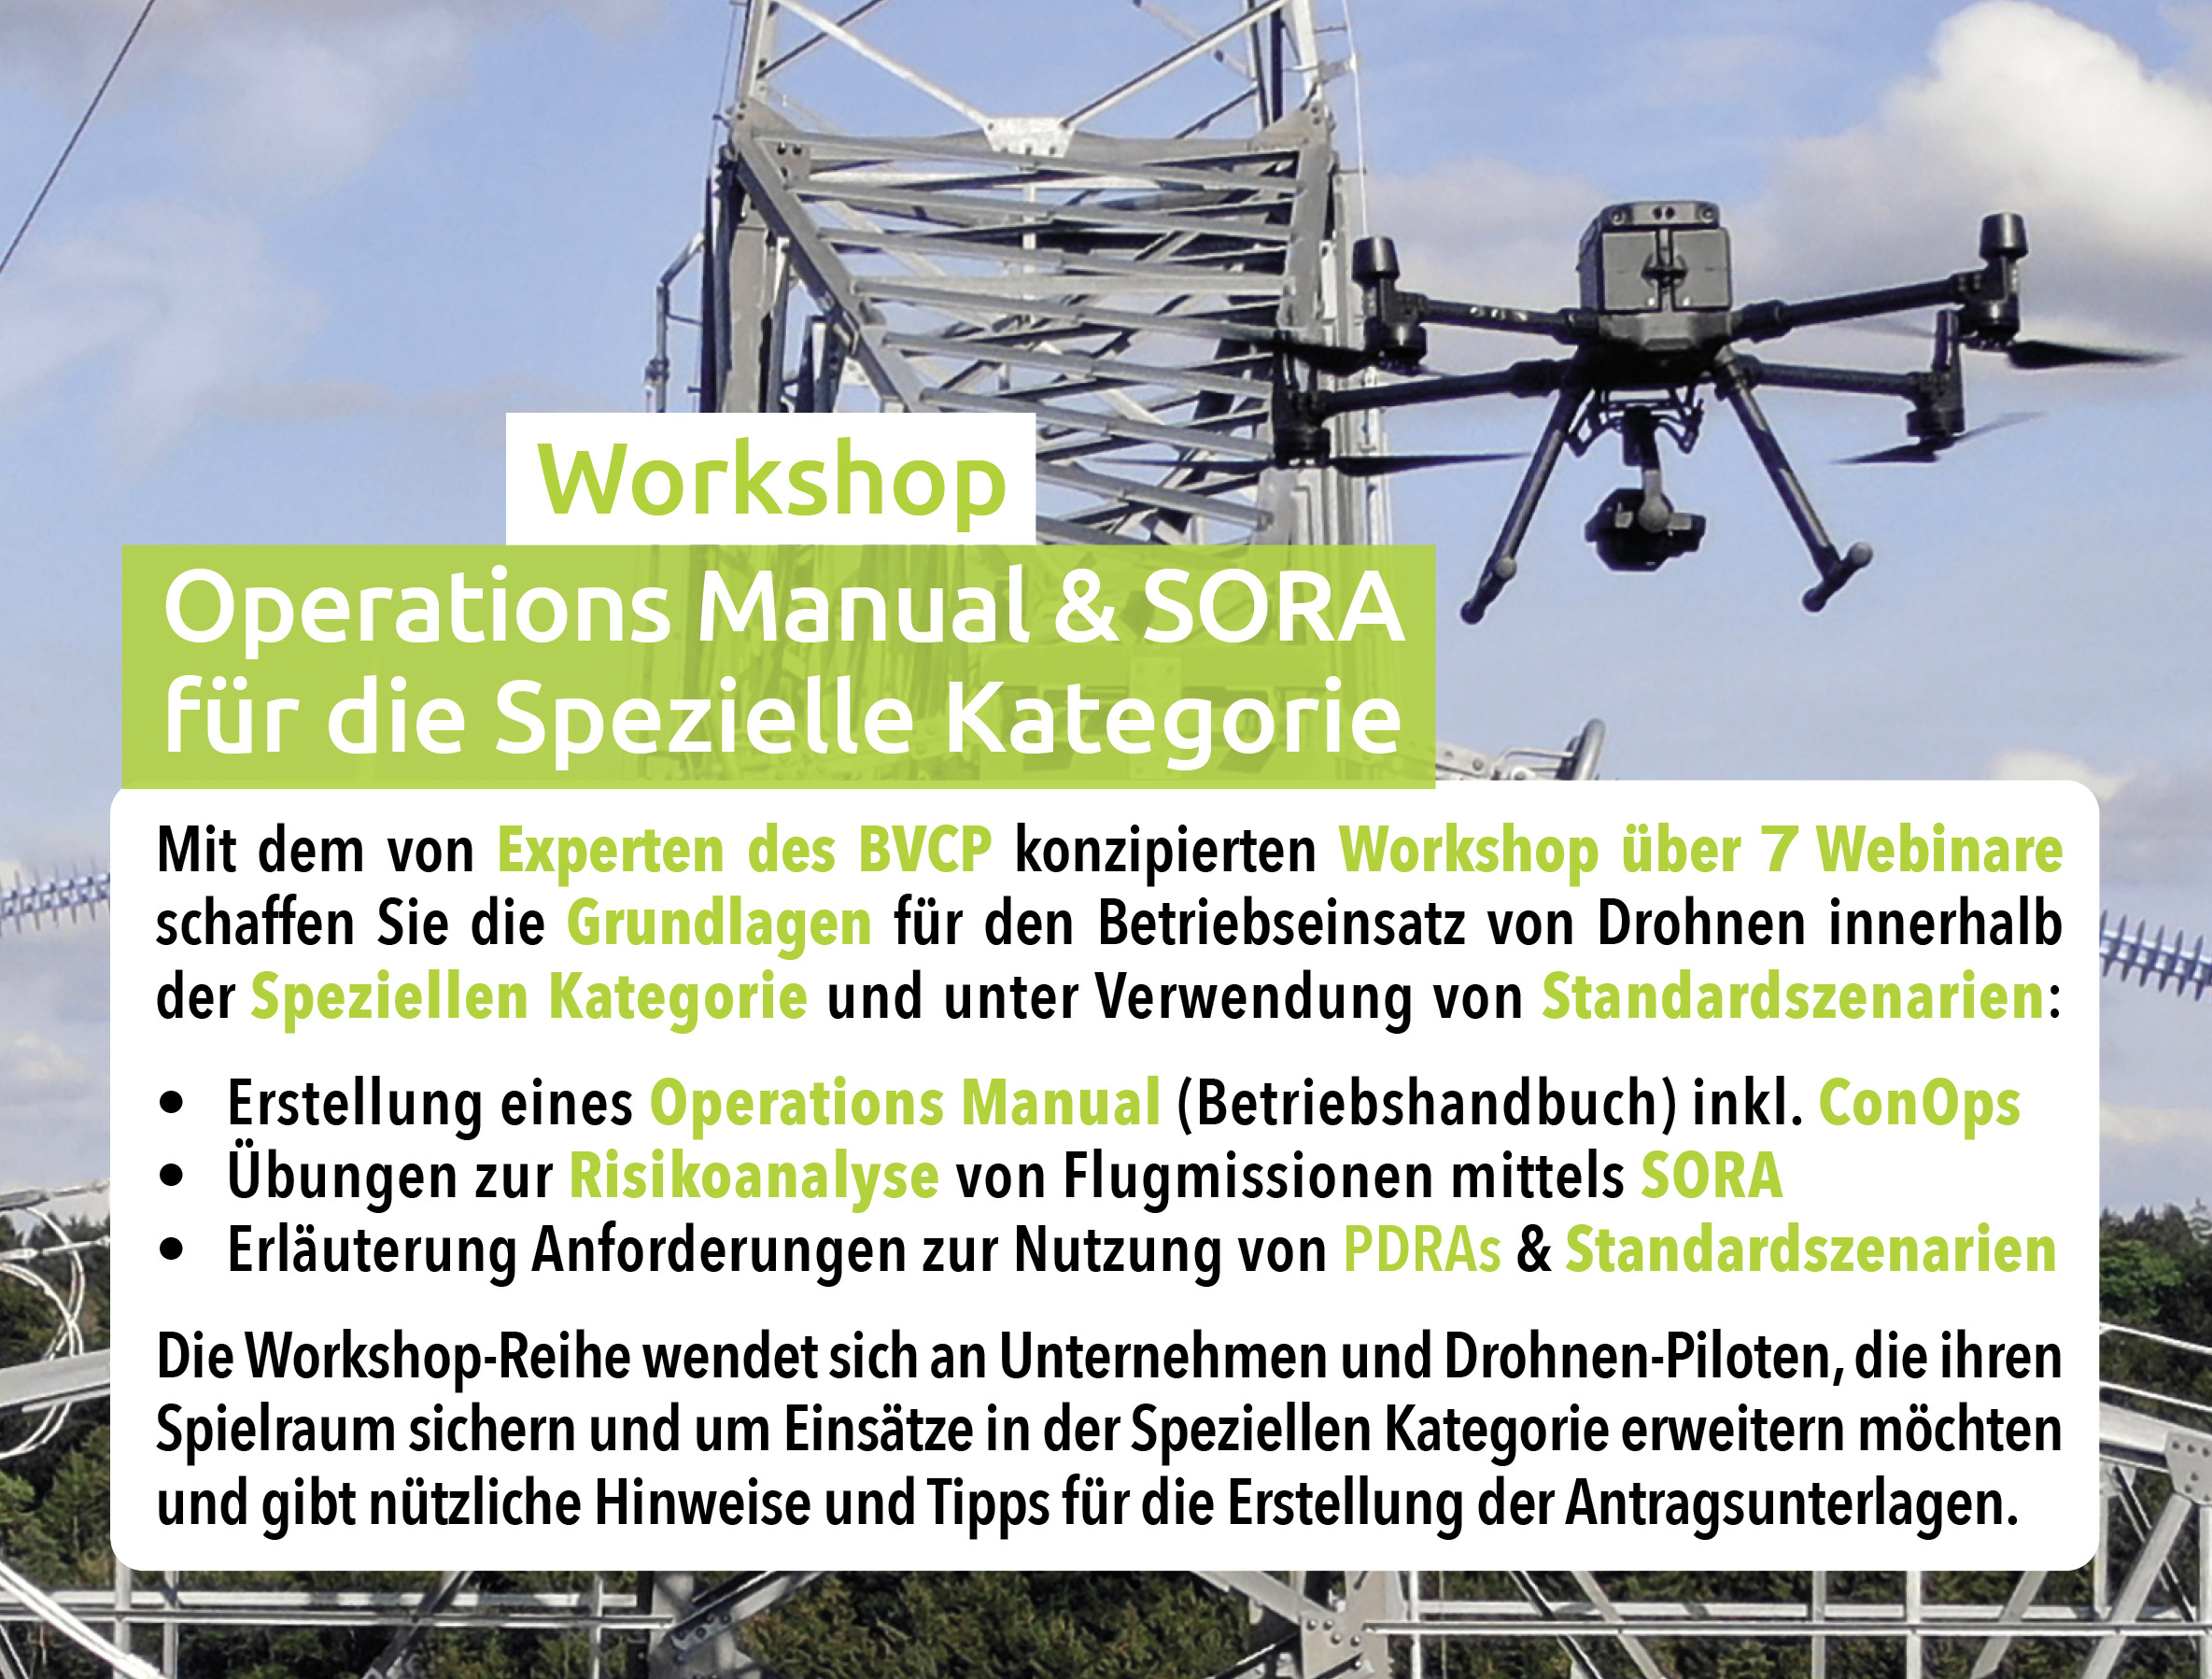 Inhalte Workshop Operations Manual & SORA